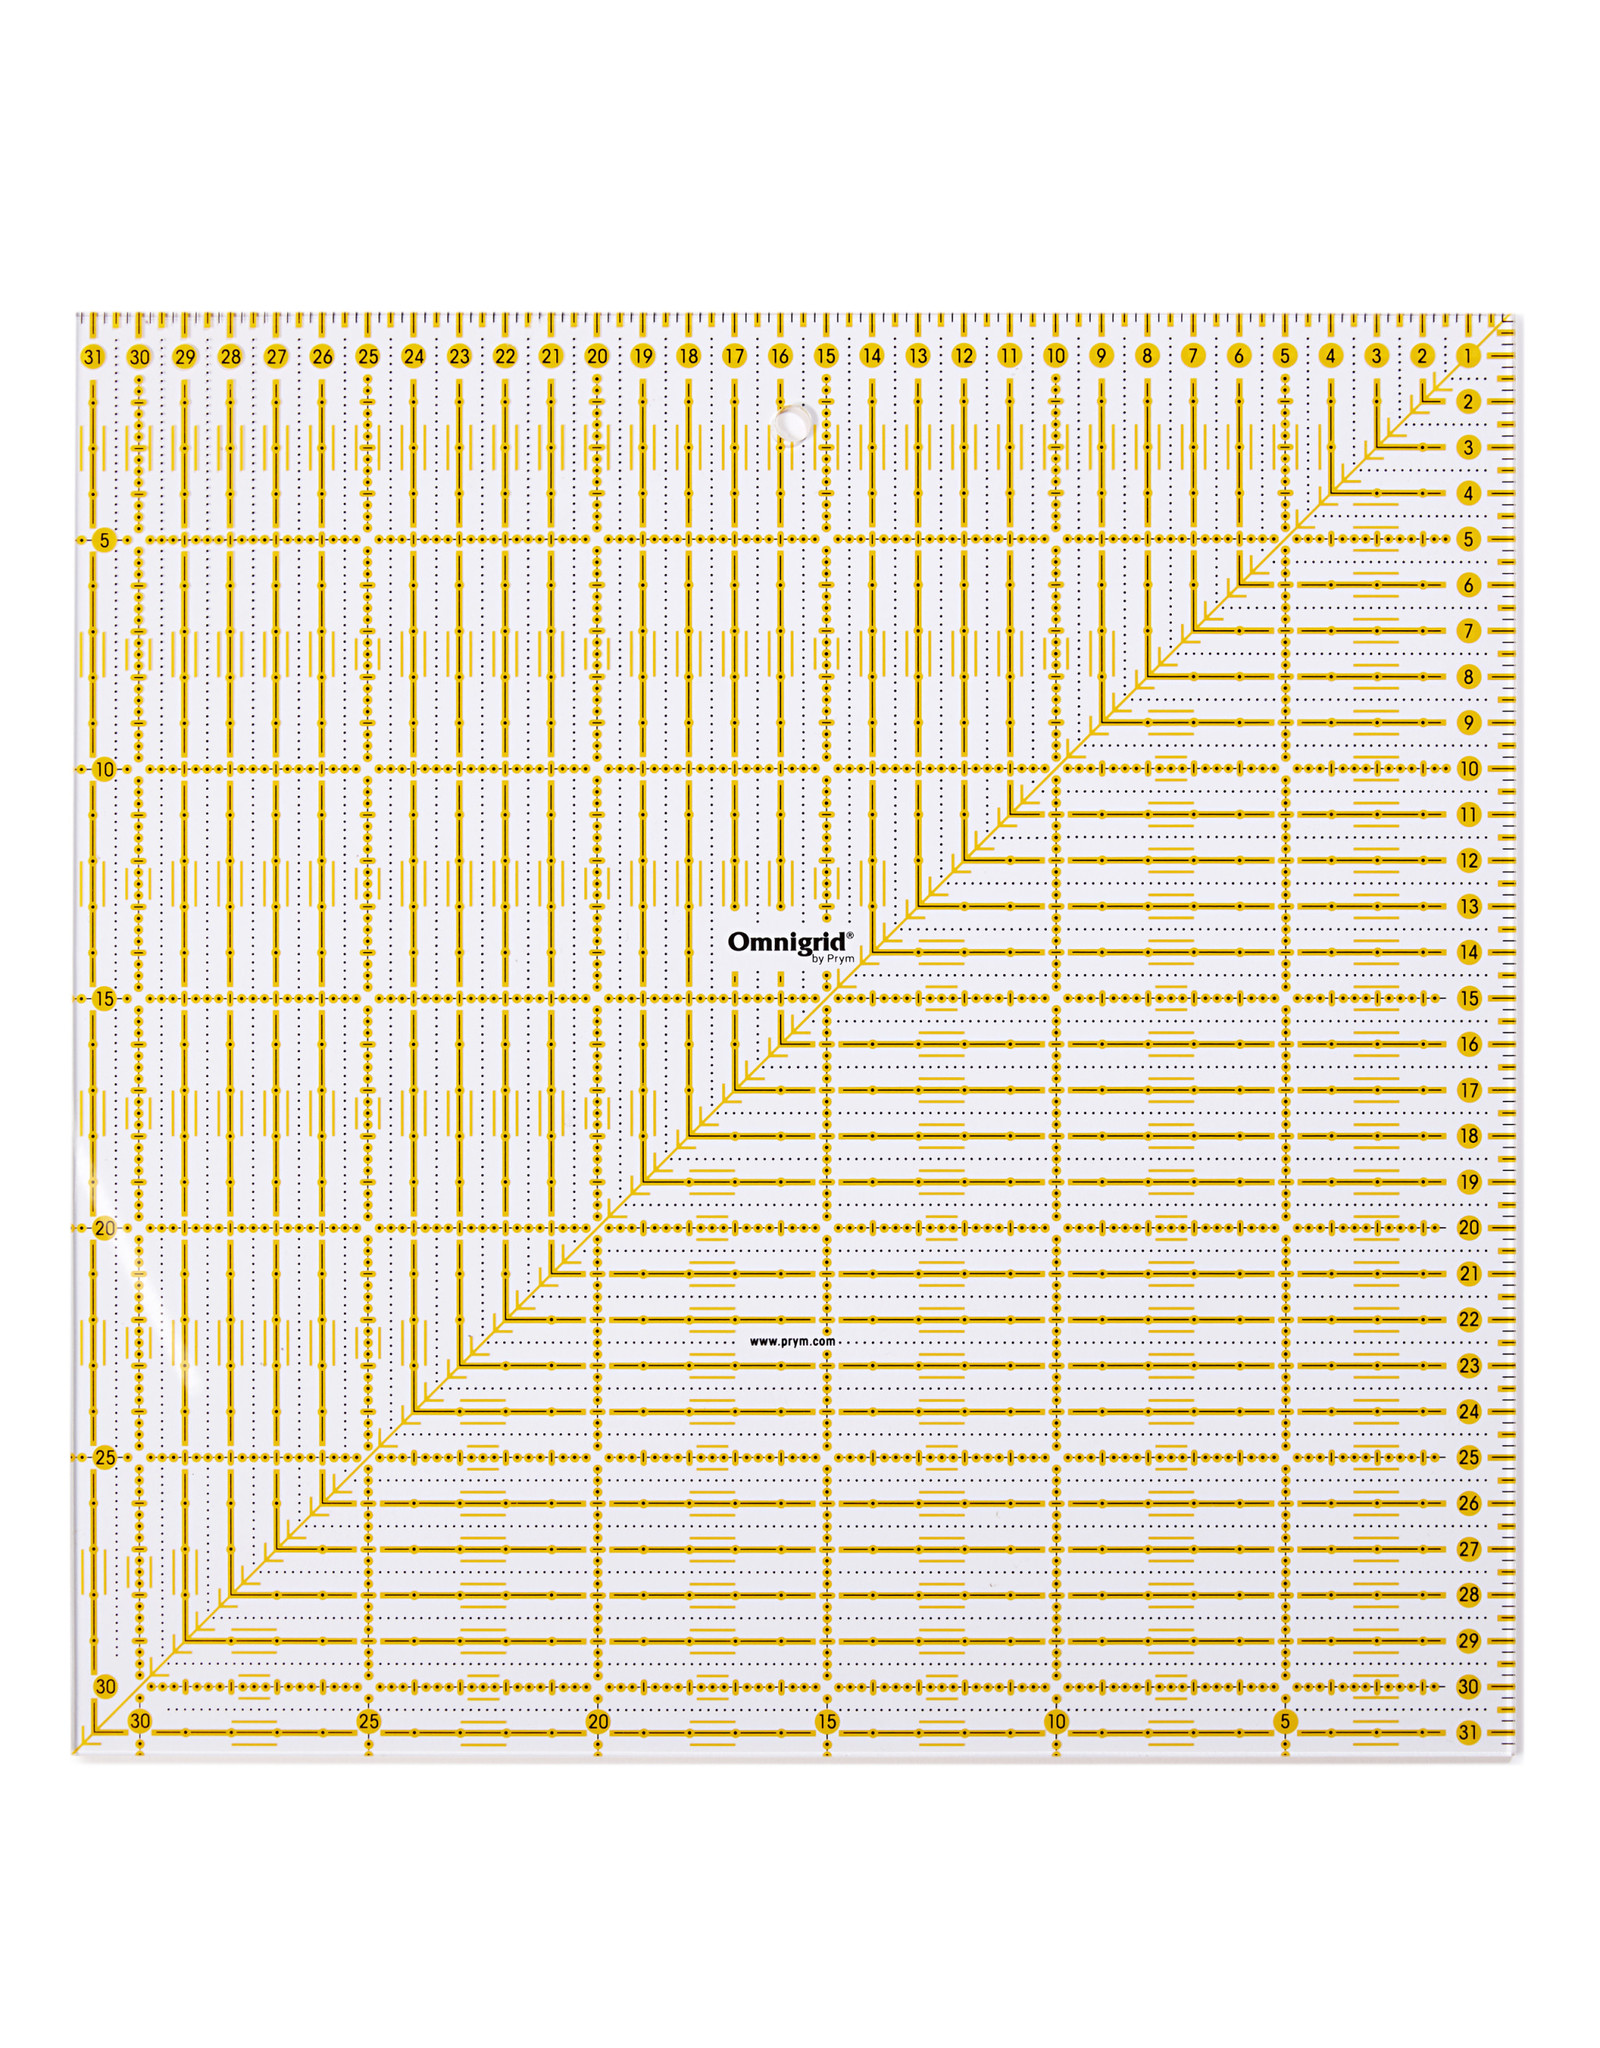 Prym Omnigrid Universele liniaal 31,5 x 31,5 cm